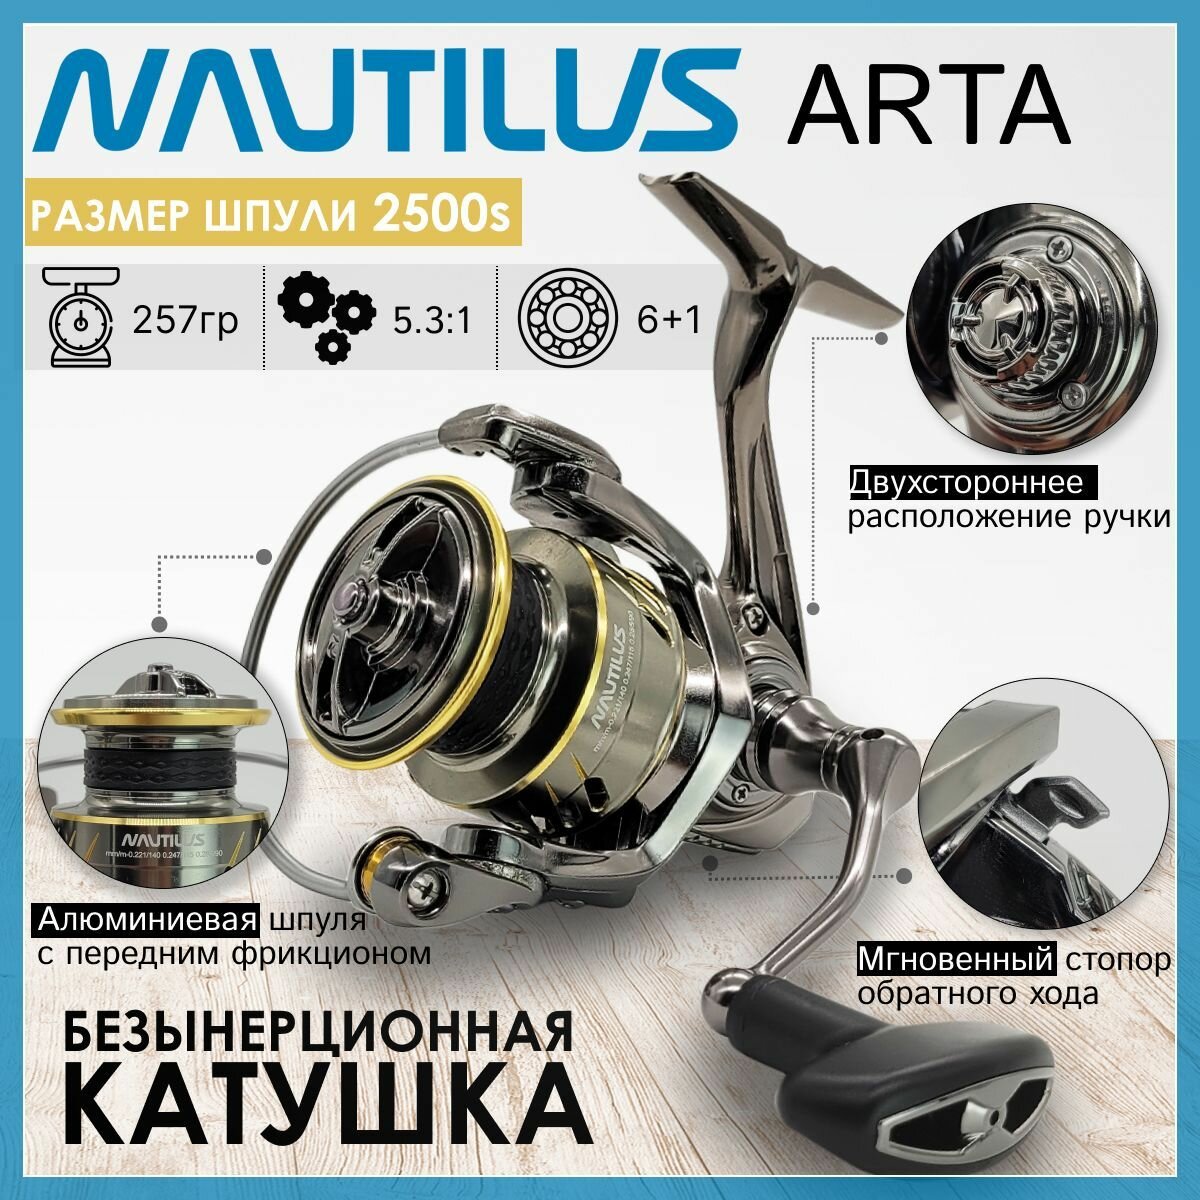 Катушка Nautilus ARTA 2500S, с передним фрикционом